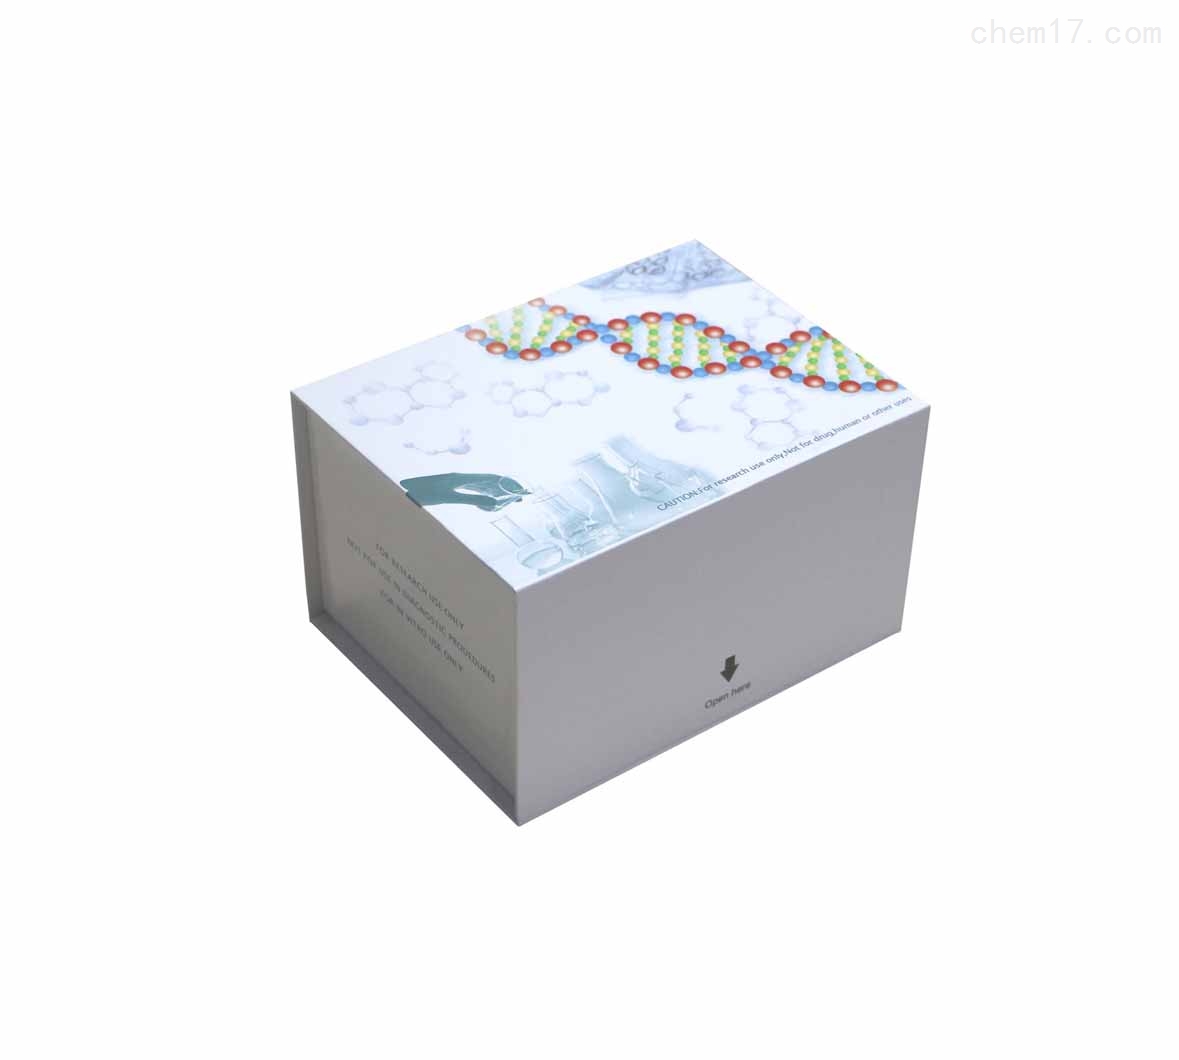 人抗胰岛素抗体(AIAb)ELISA试剂盒免费待测